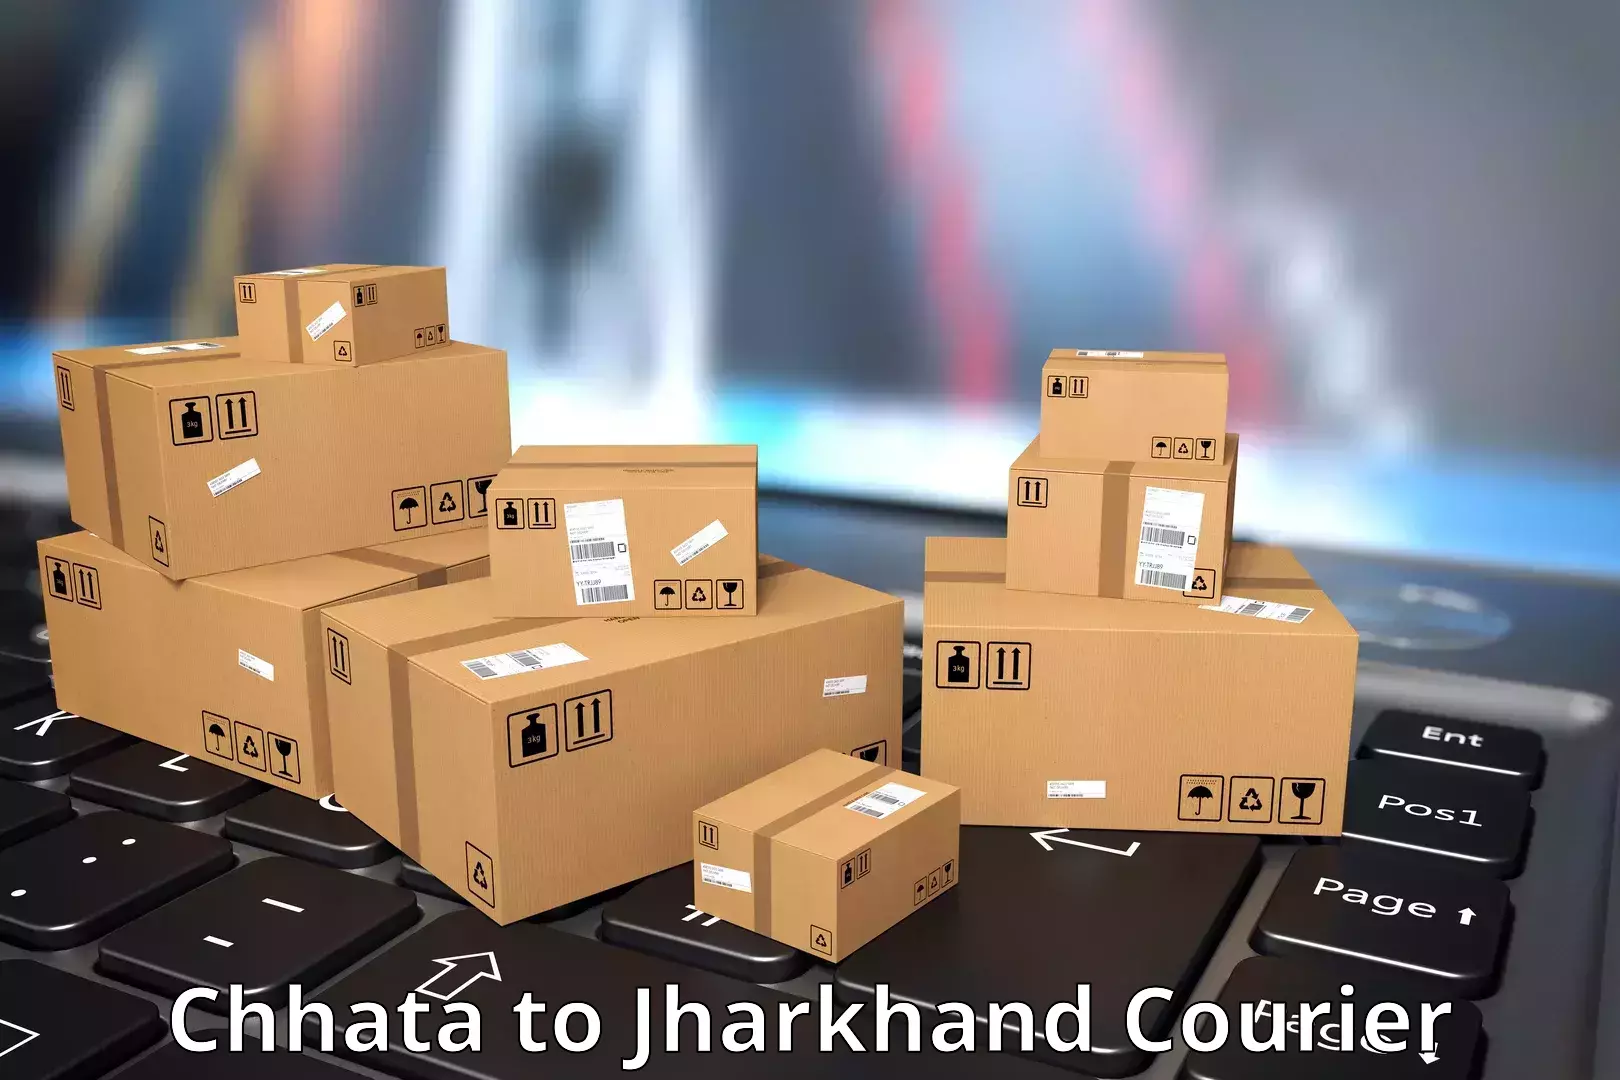 Smart shipping technology Chhata to Tandwa